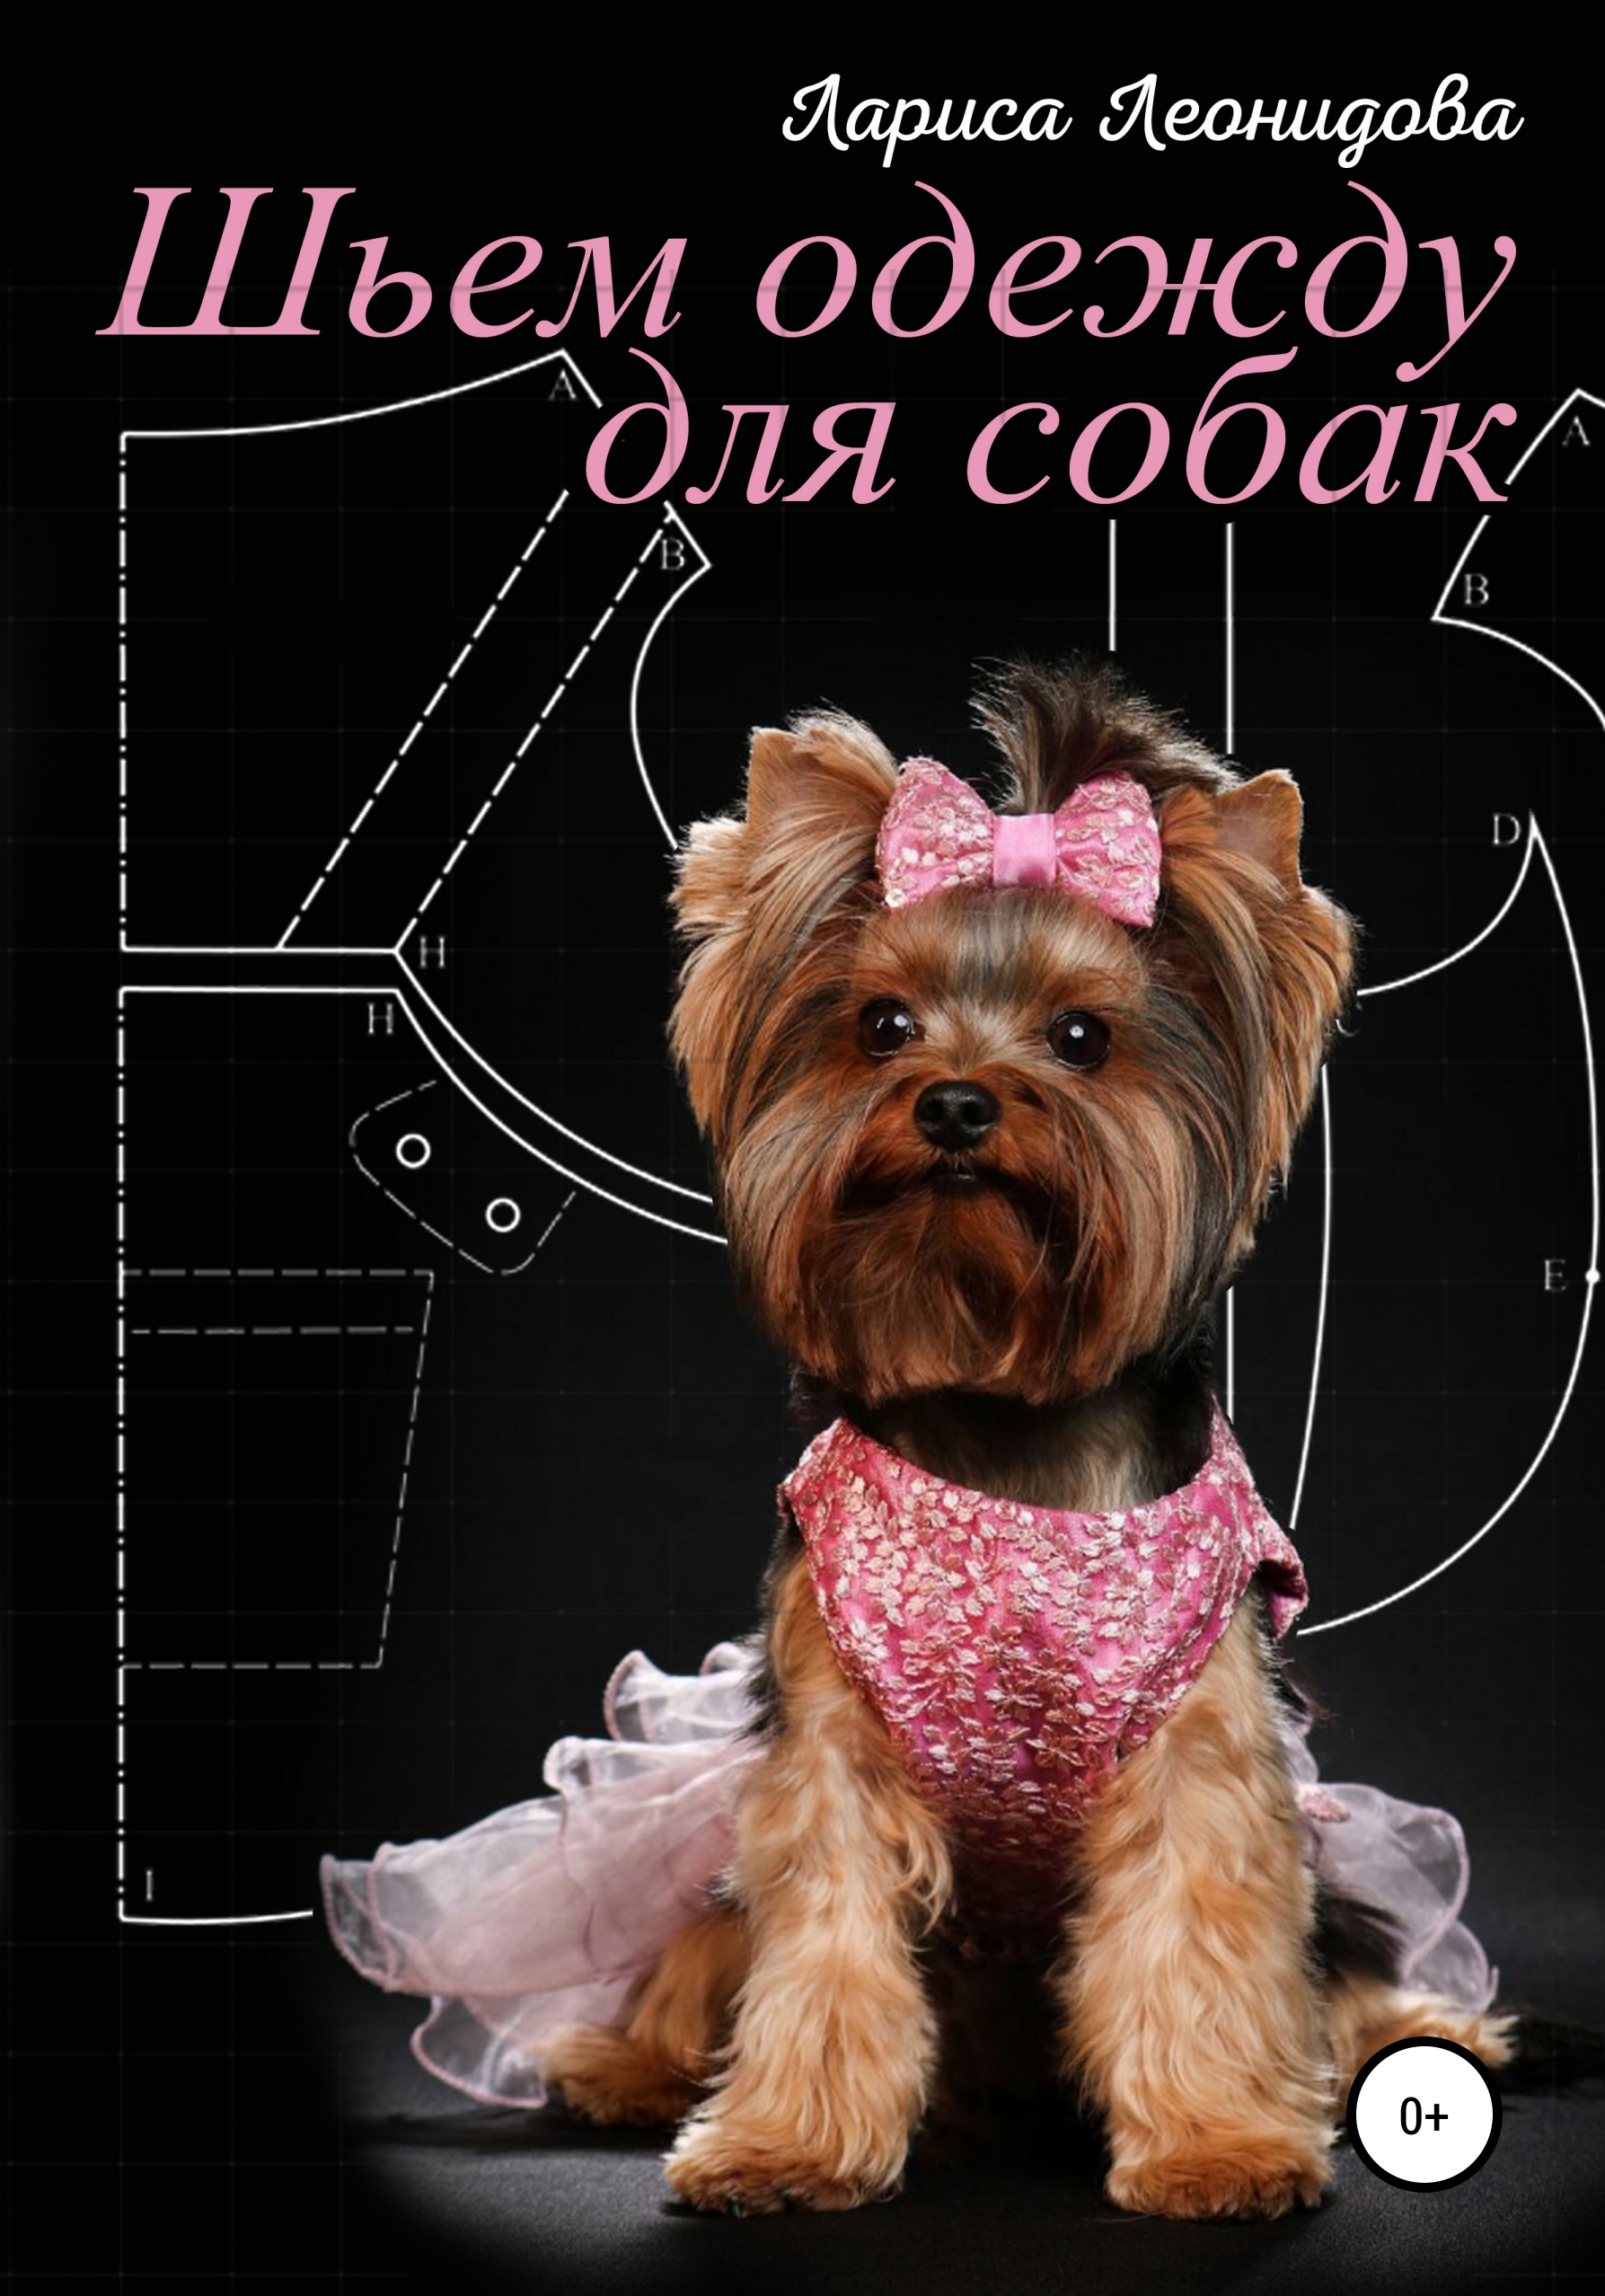 Платье (свитер) для собаки Йорка крючком - Подробный мастер класс